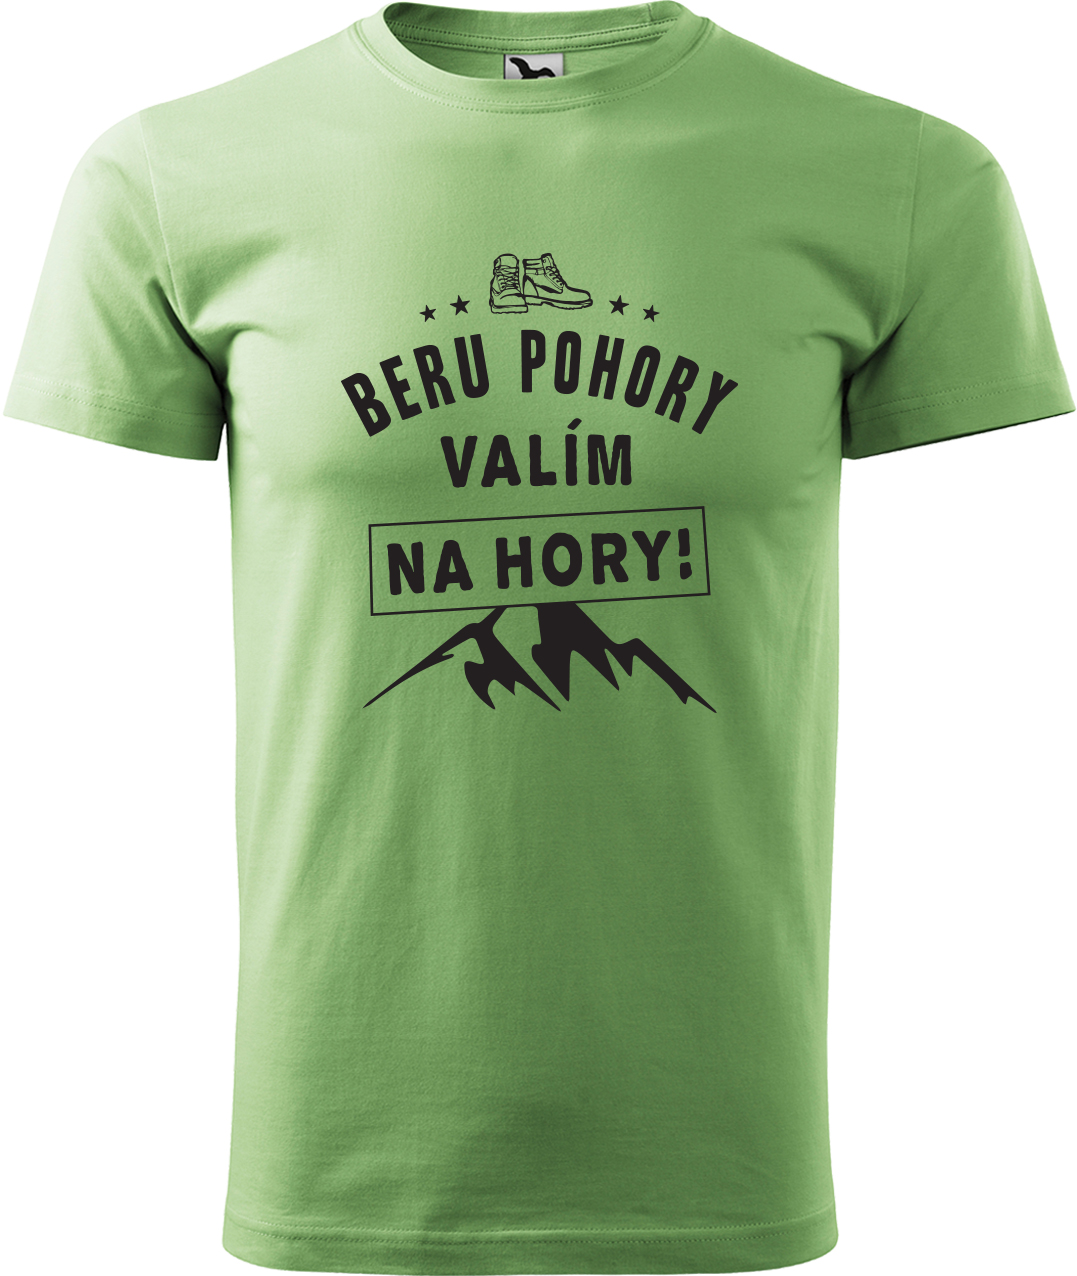 Pánské tričko na hory - Beru pohory, valím na hory Velikost: XL, Barva: Trávově zelená (39), Střih: pánský